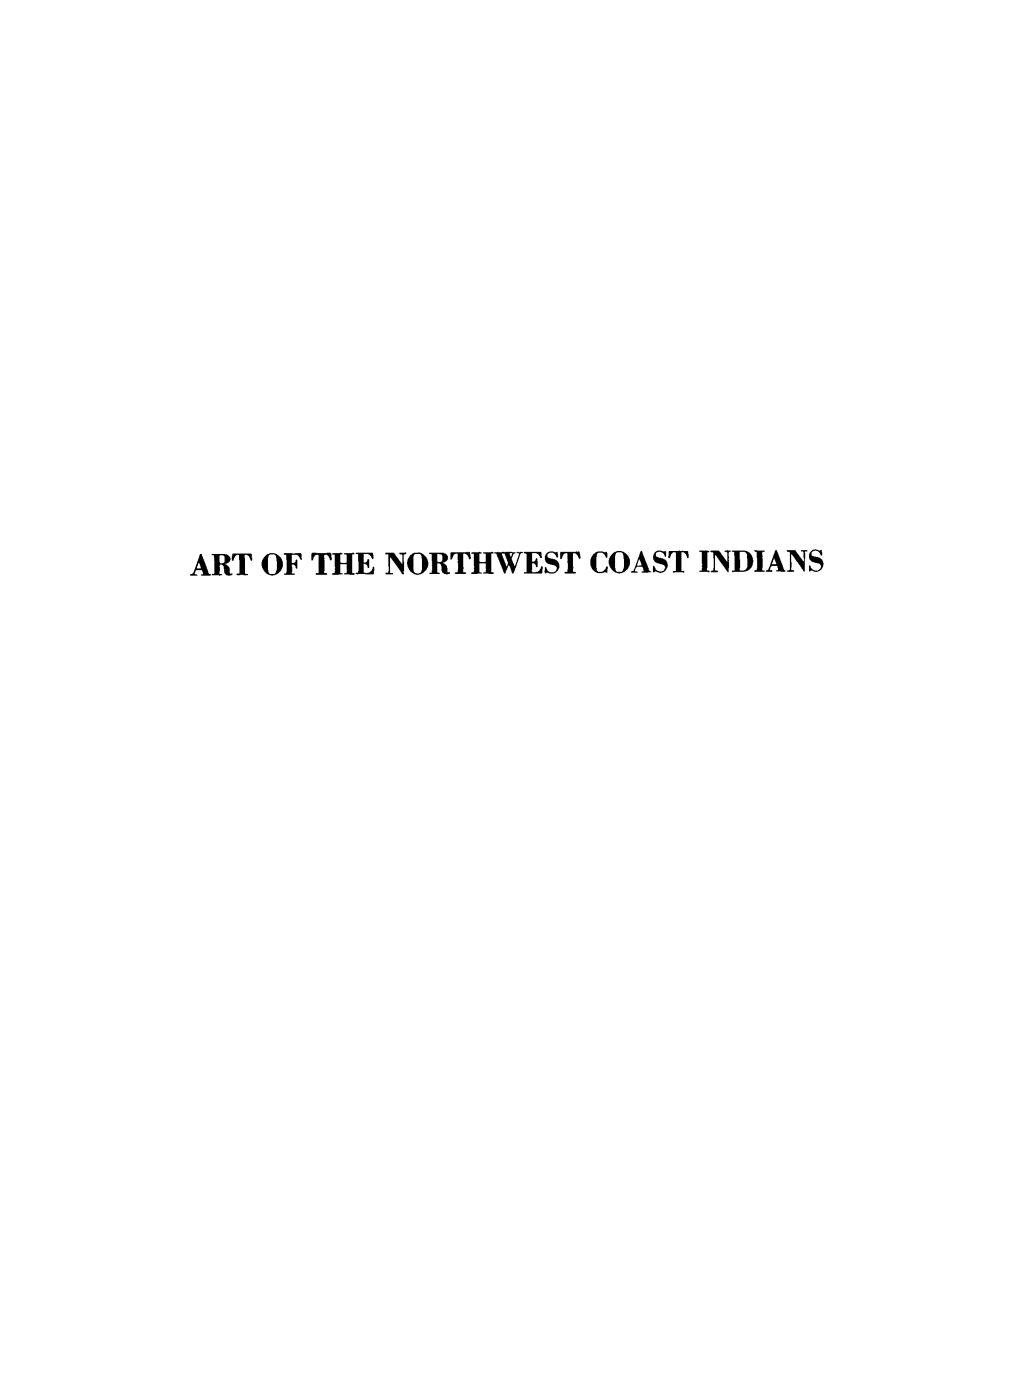 Art of the Northwest Coast Indians